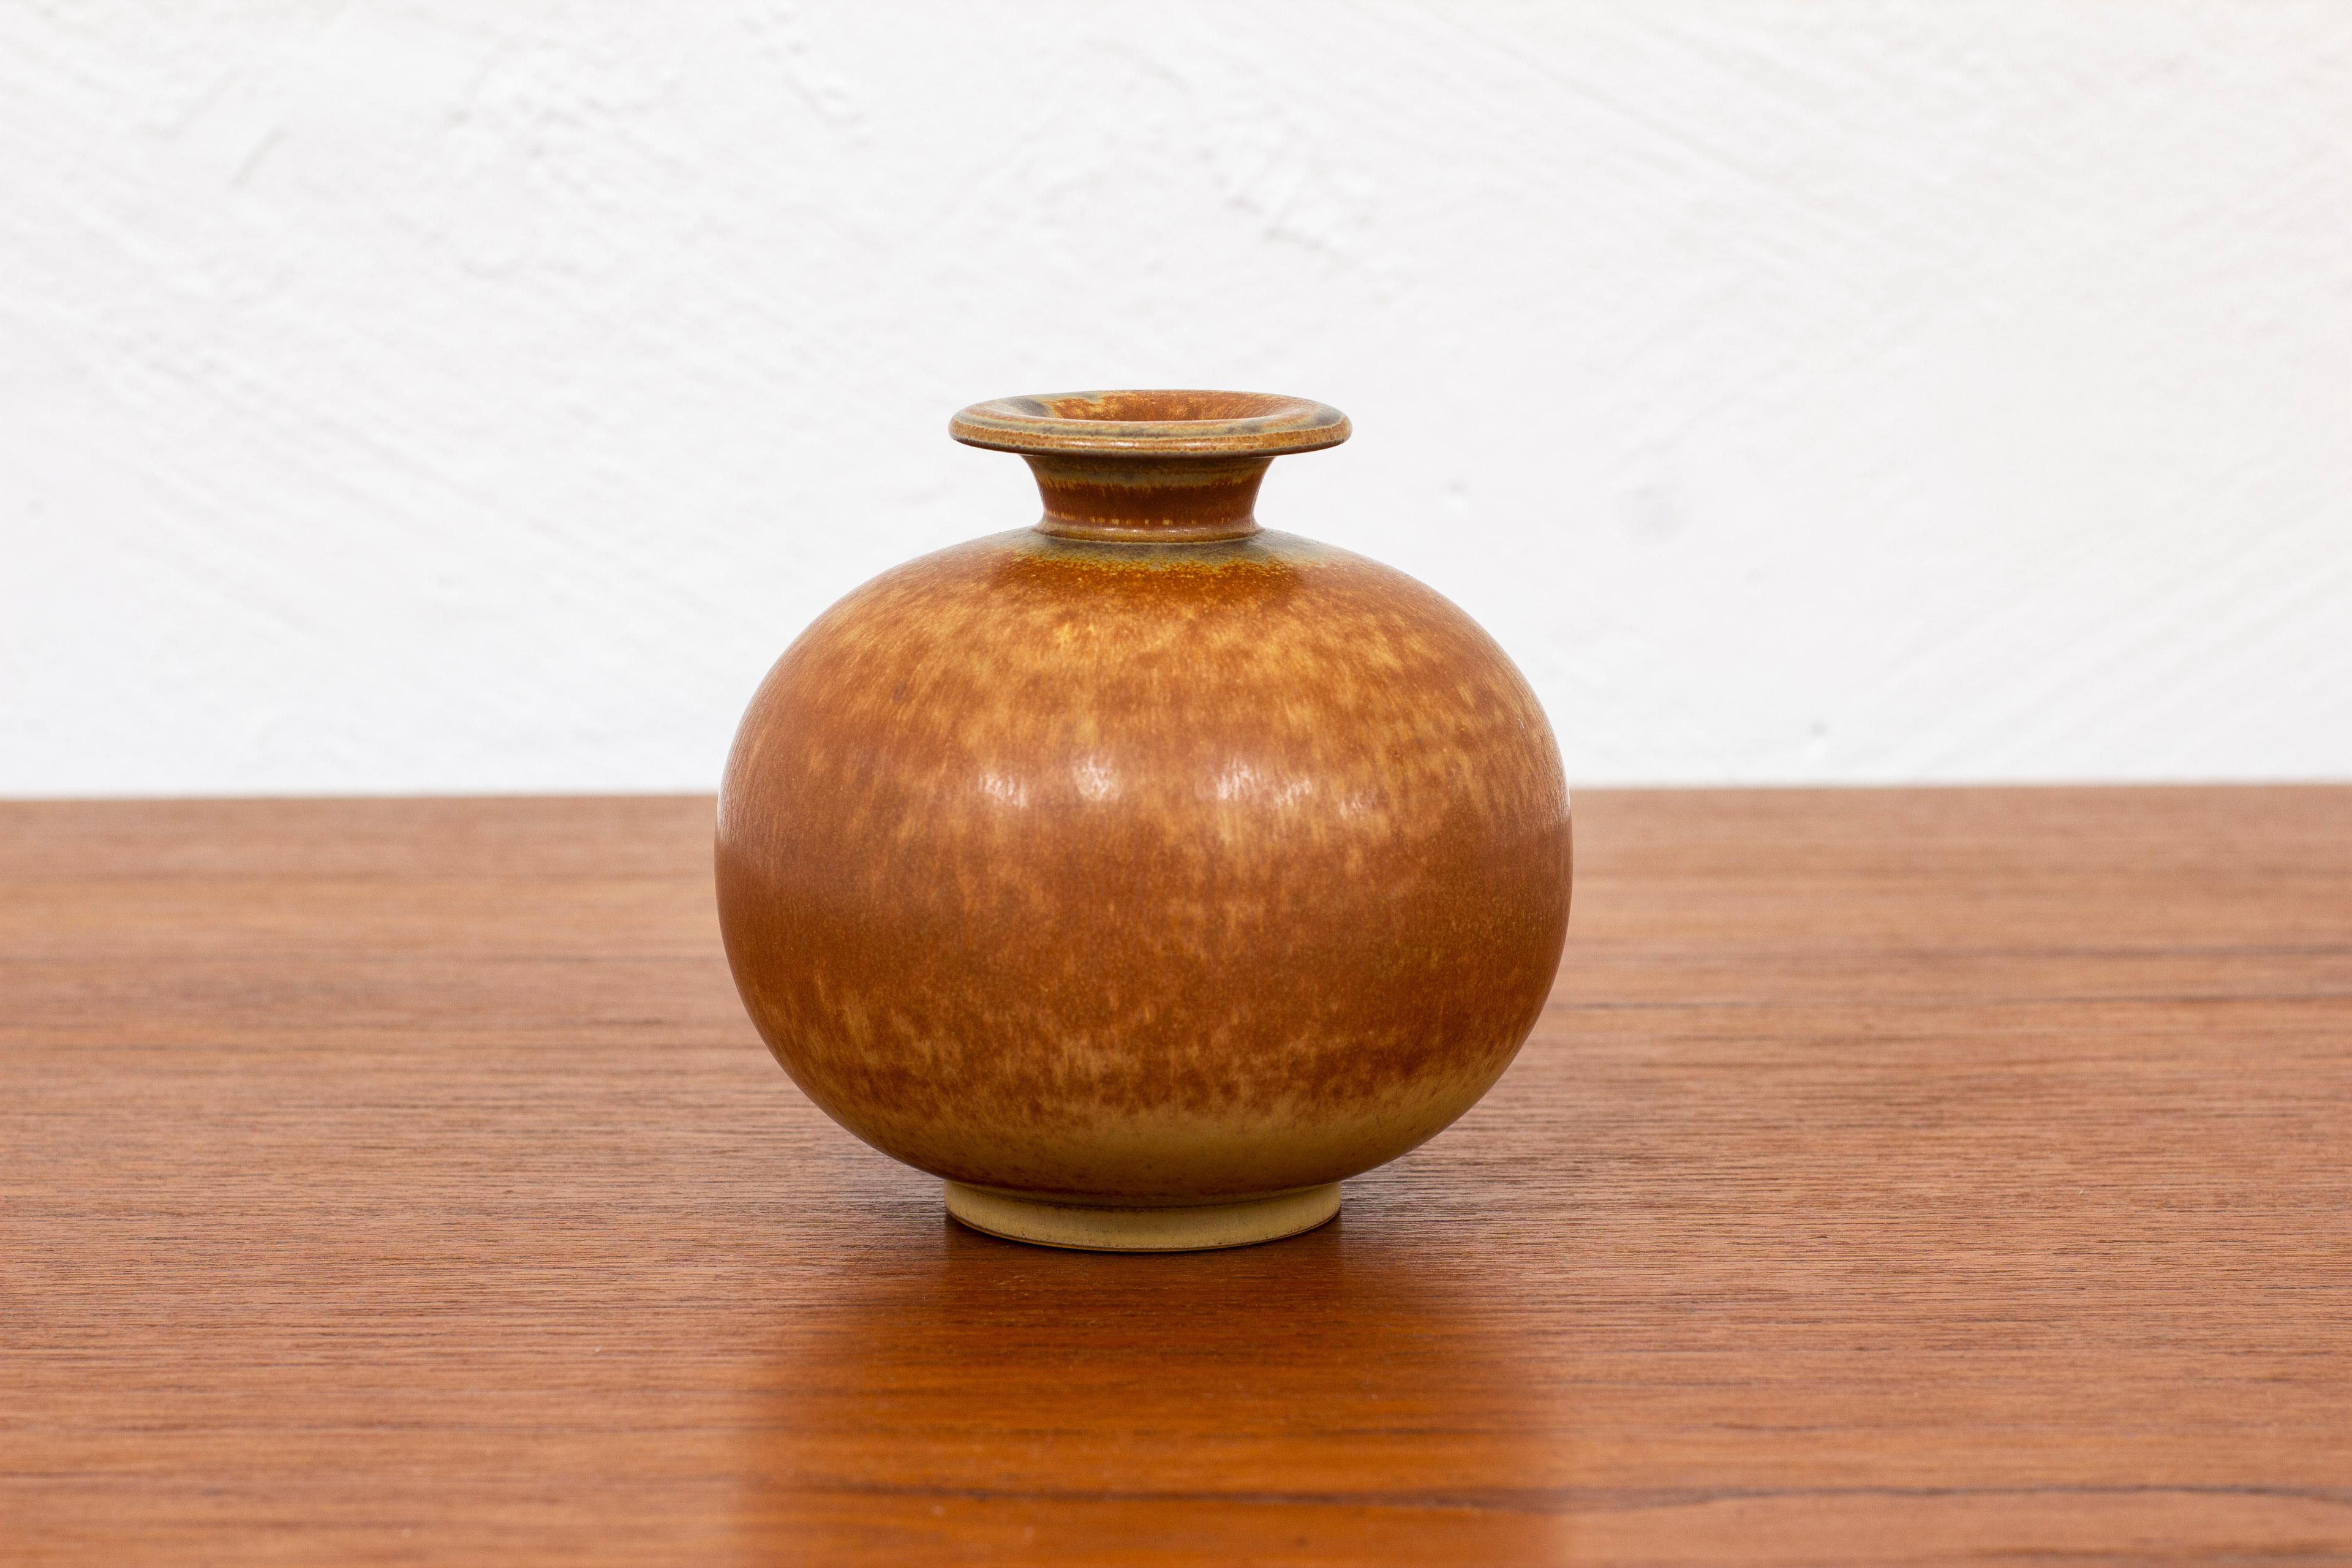 Vase aus Steingut, entworfen von Gunnar Nylund. Handgefertigt in Rörstrand in den 1940er Jahren. Glasur mit gebrannten Brauntönen. Sehr guter Vintage-Zustand mit leichter Abnutzung und Patina.

